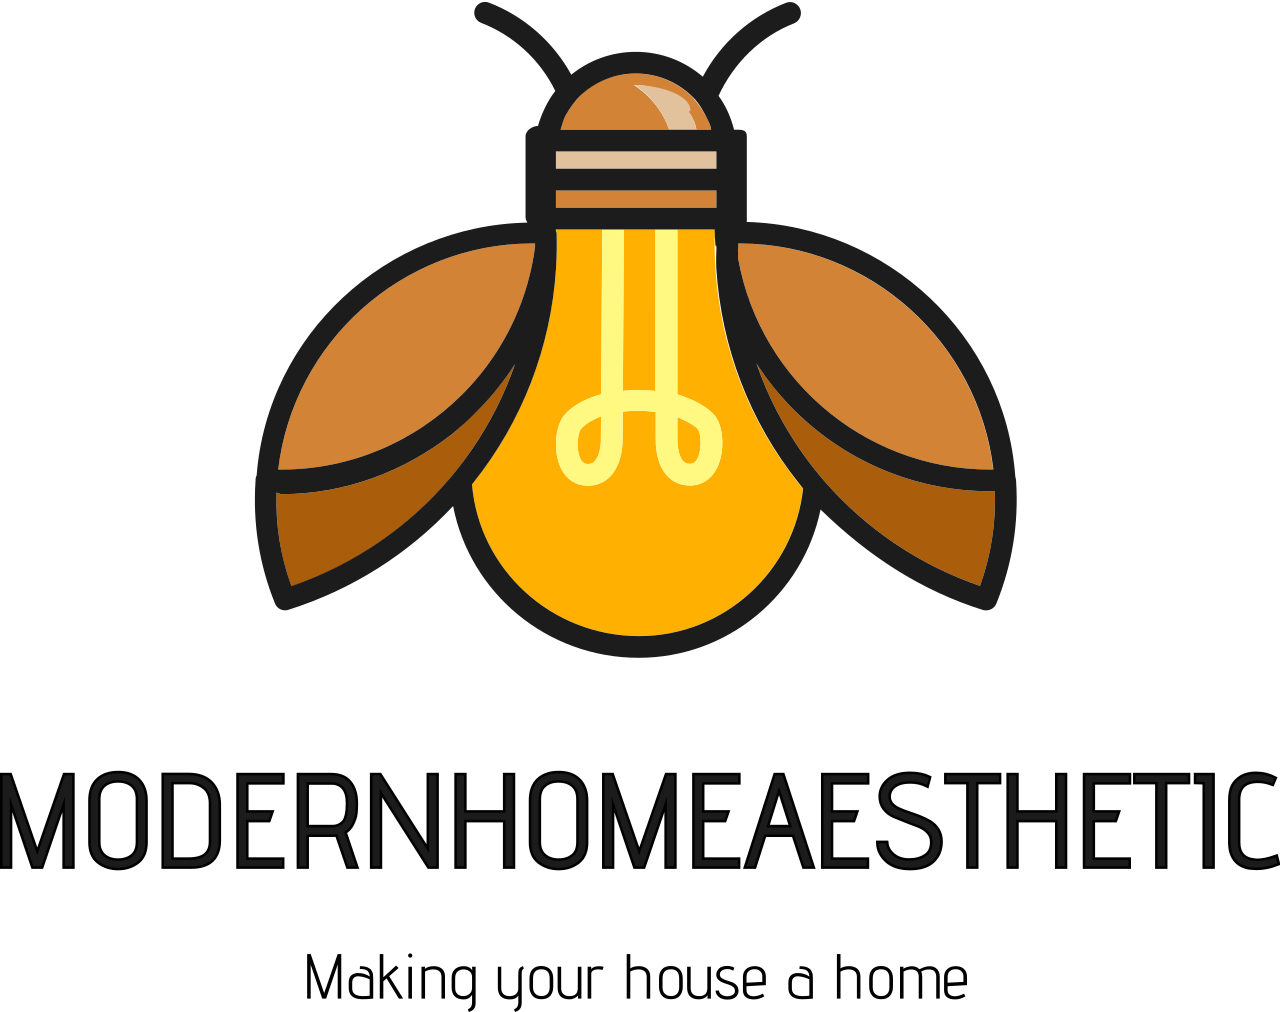 MODERNHOMEAESTHETIC's logo